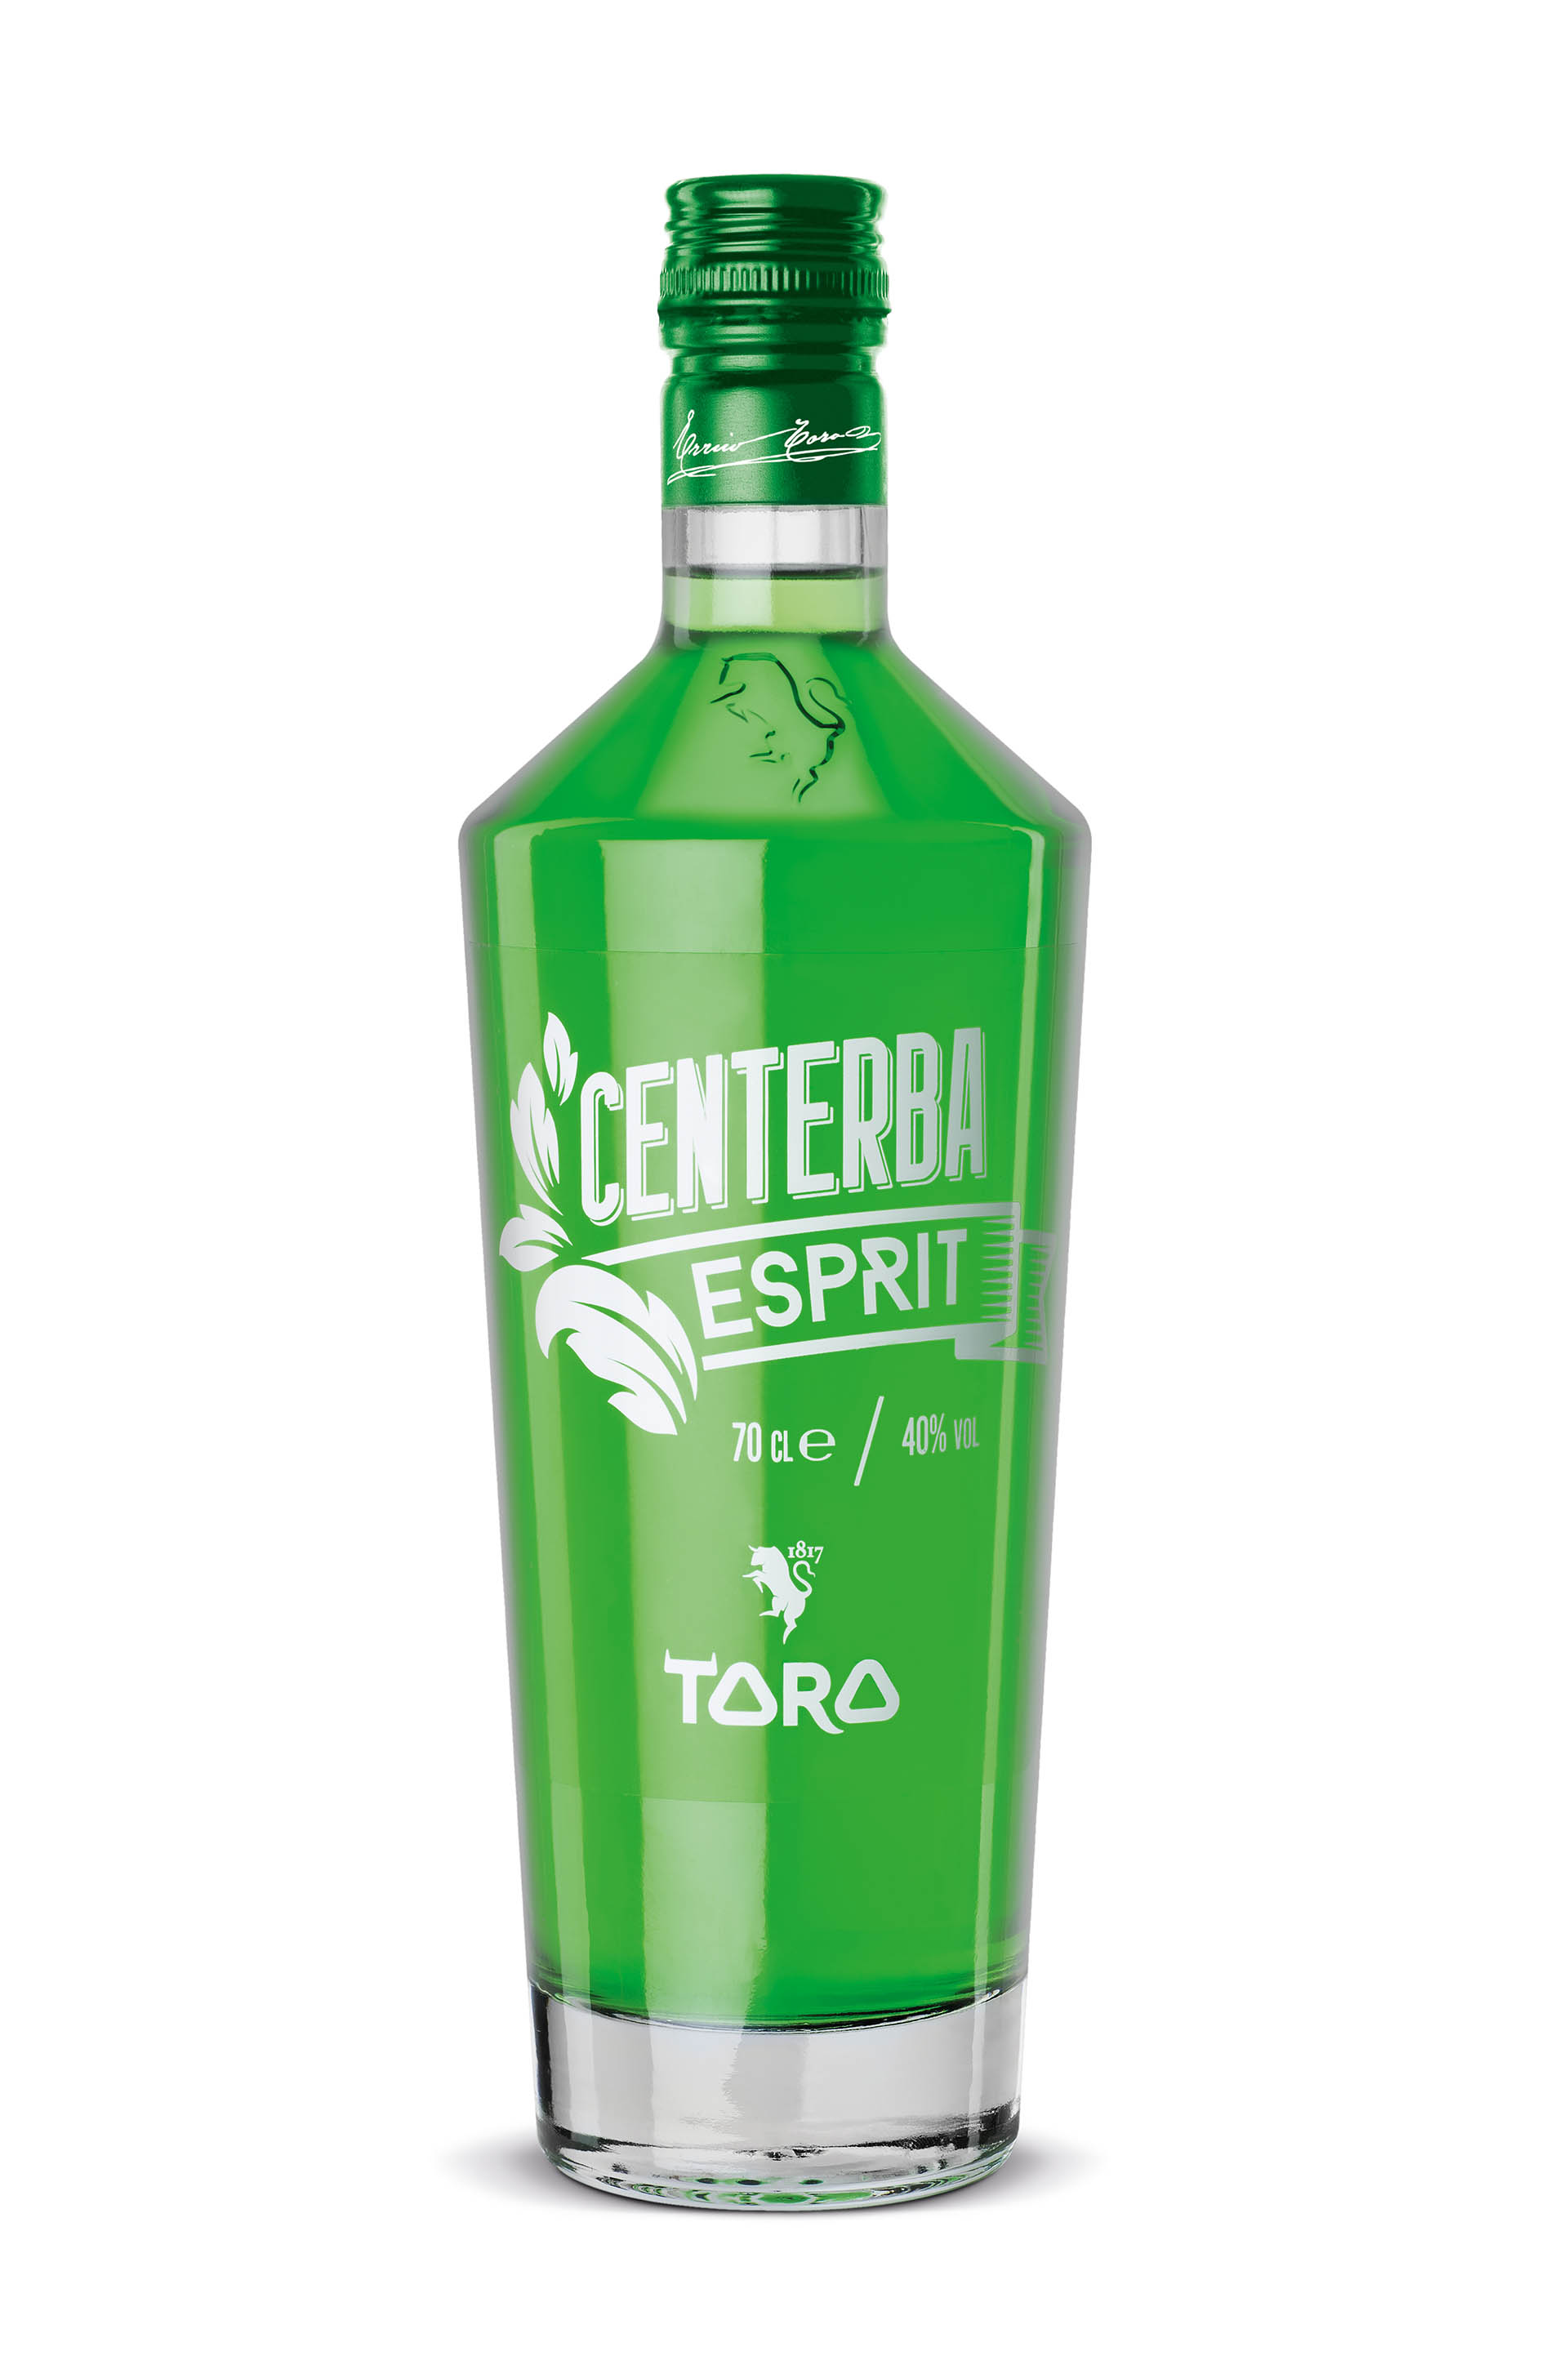 Liquori Toro, Etichette “Centerba Esprit”